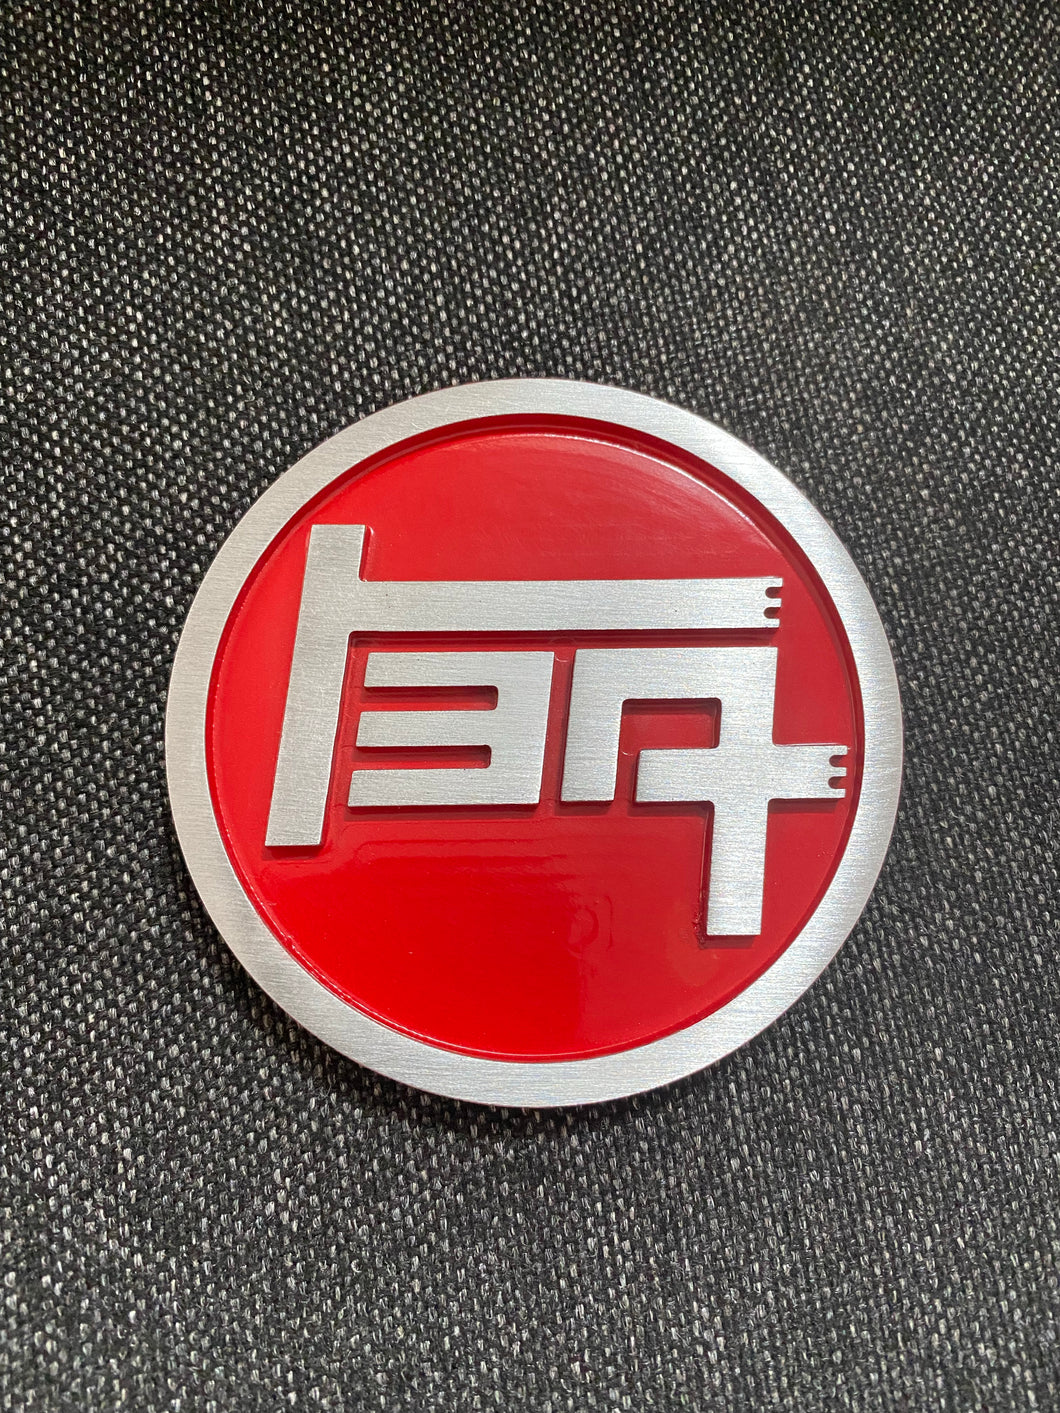 TEQ badge CNC machined